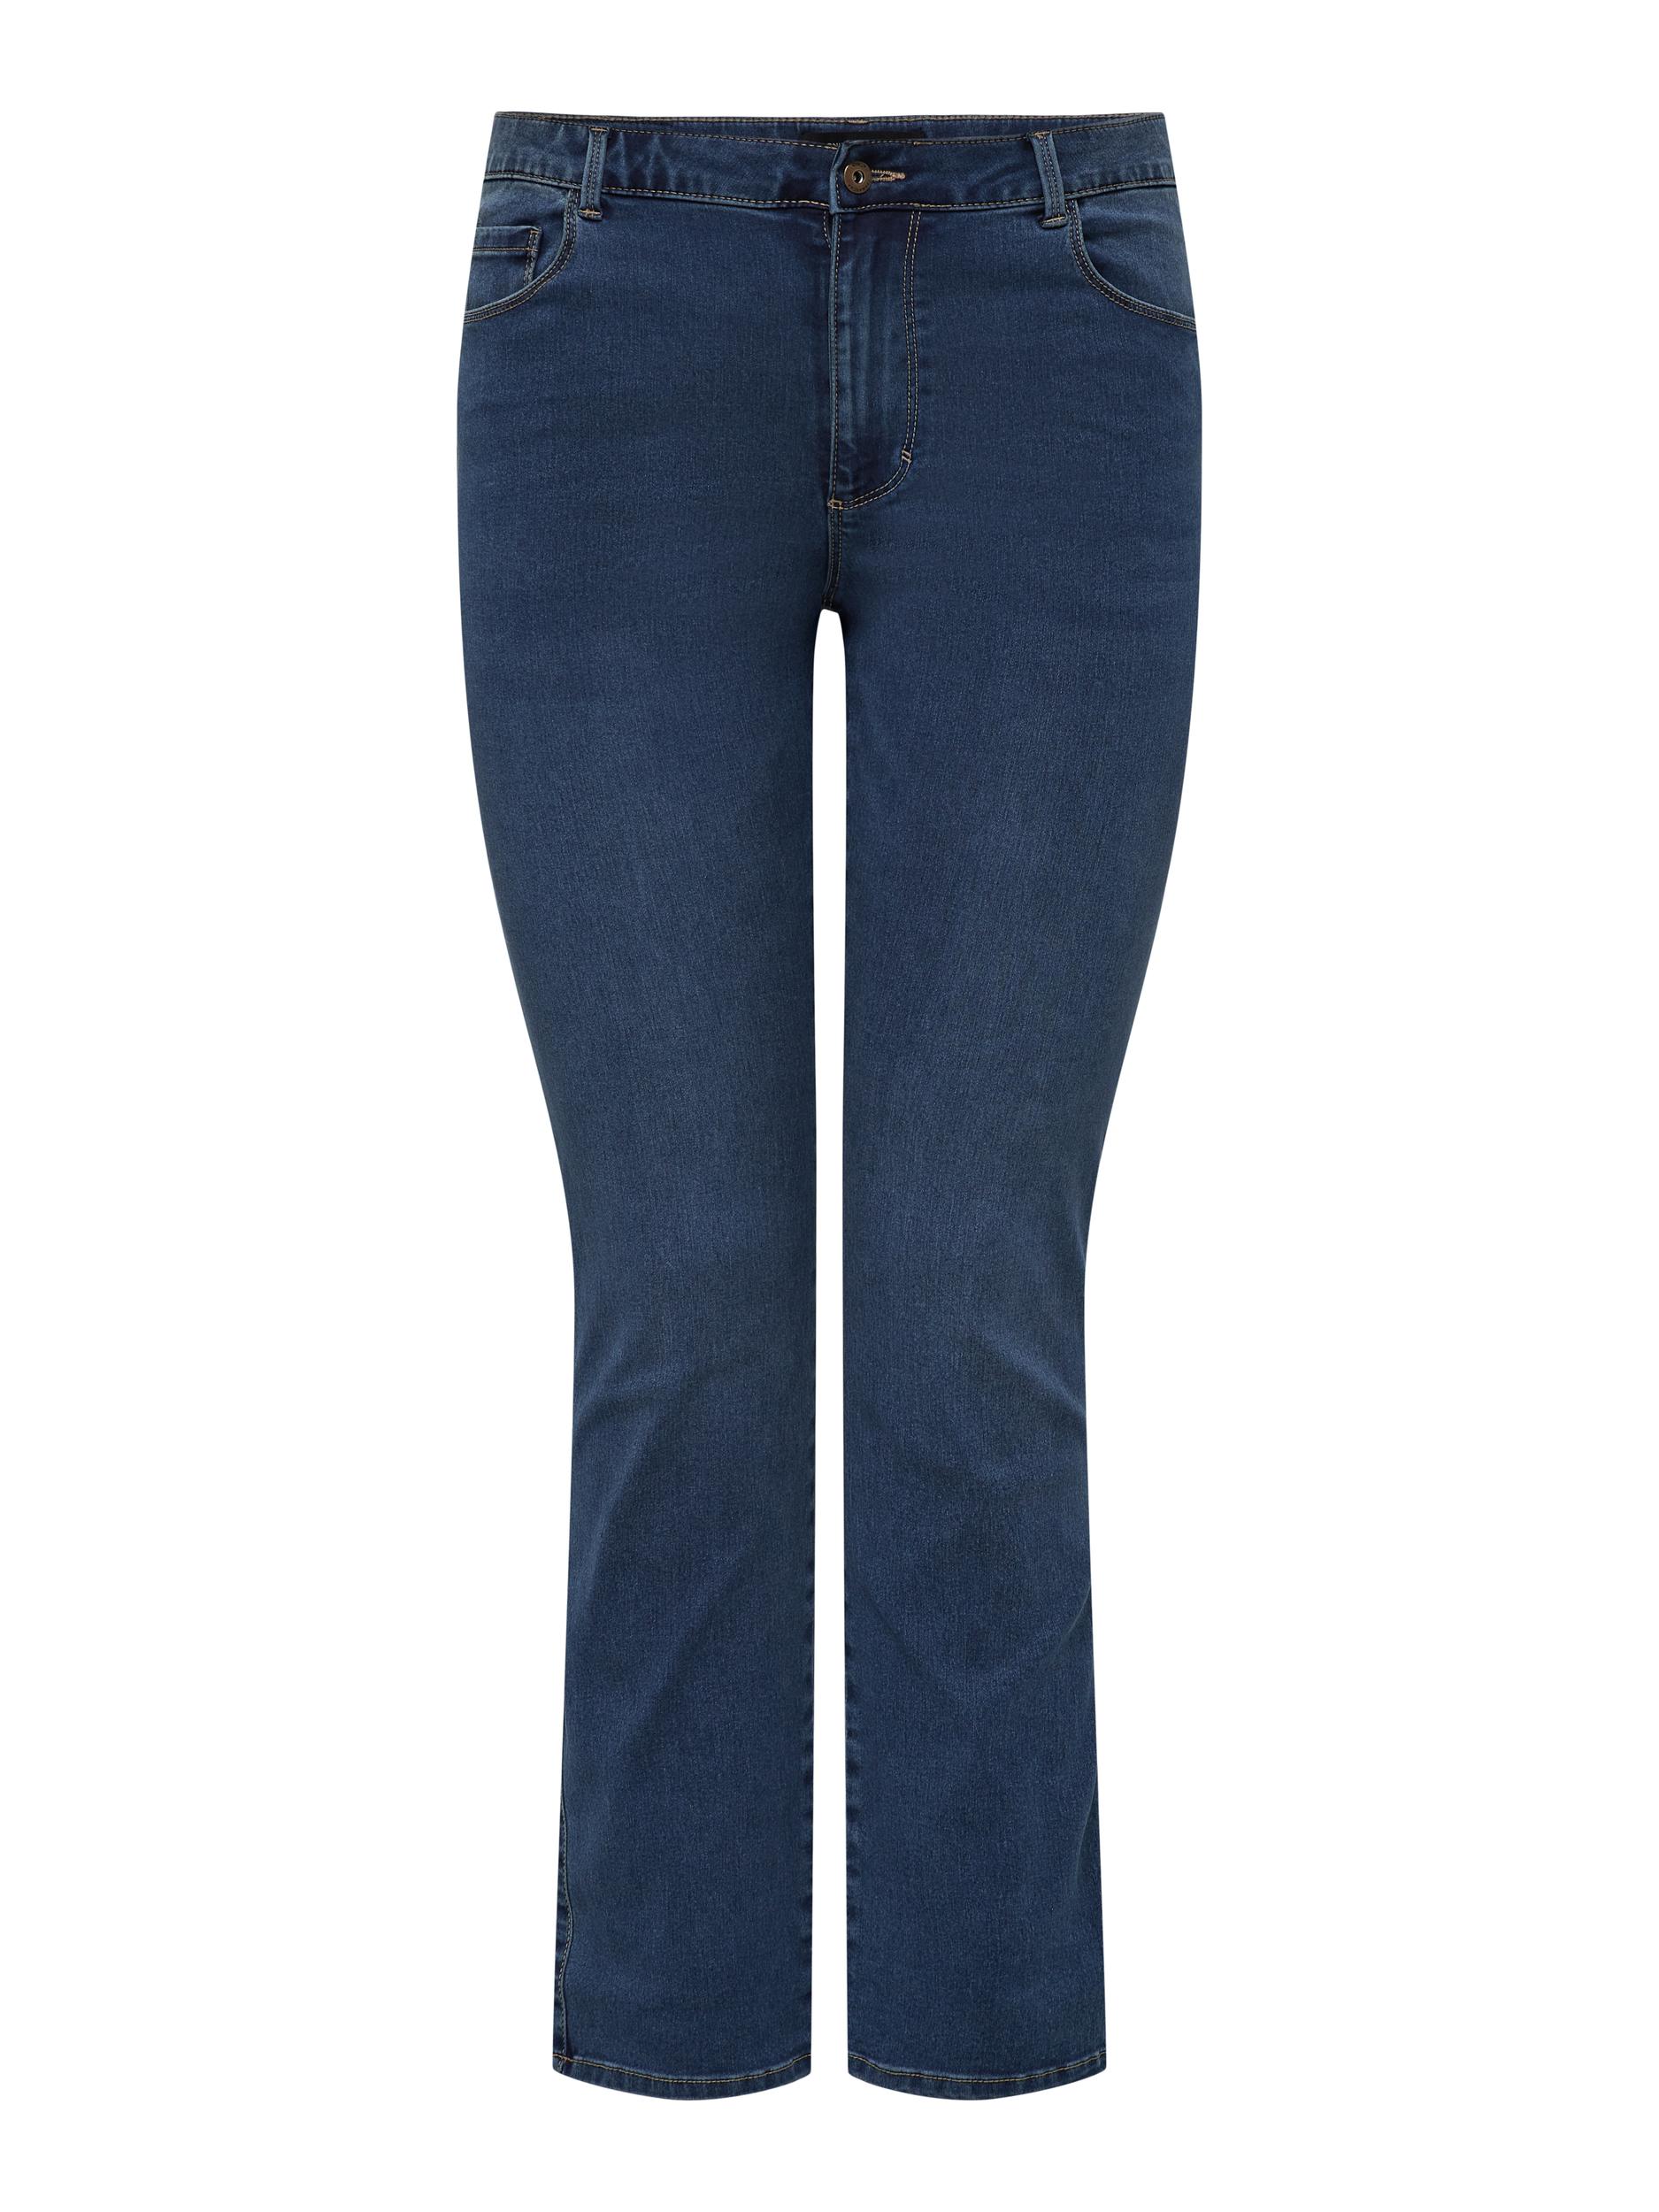 ONLYCARMA Augusta jeans